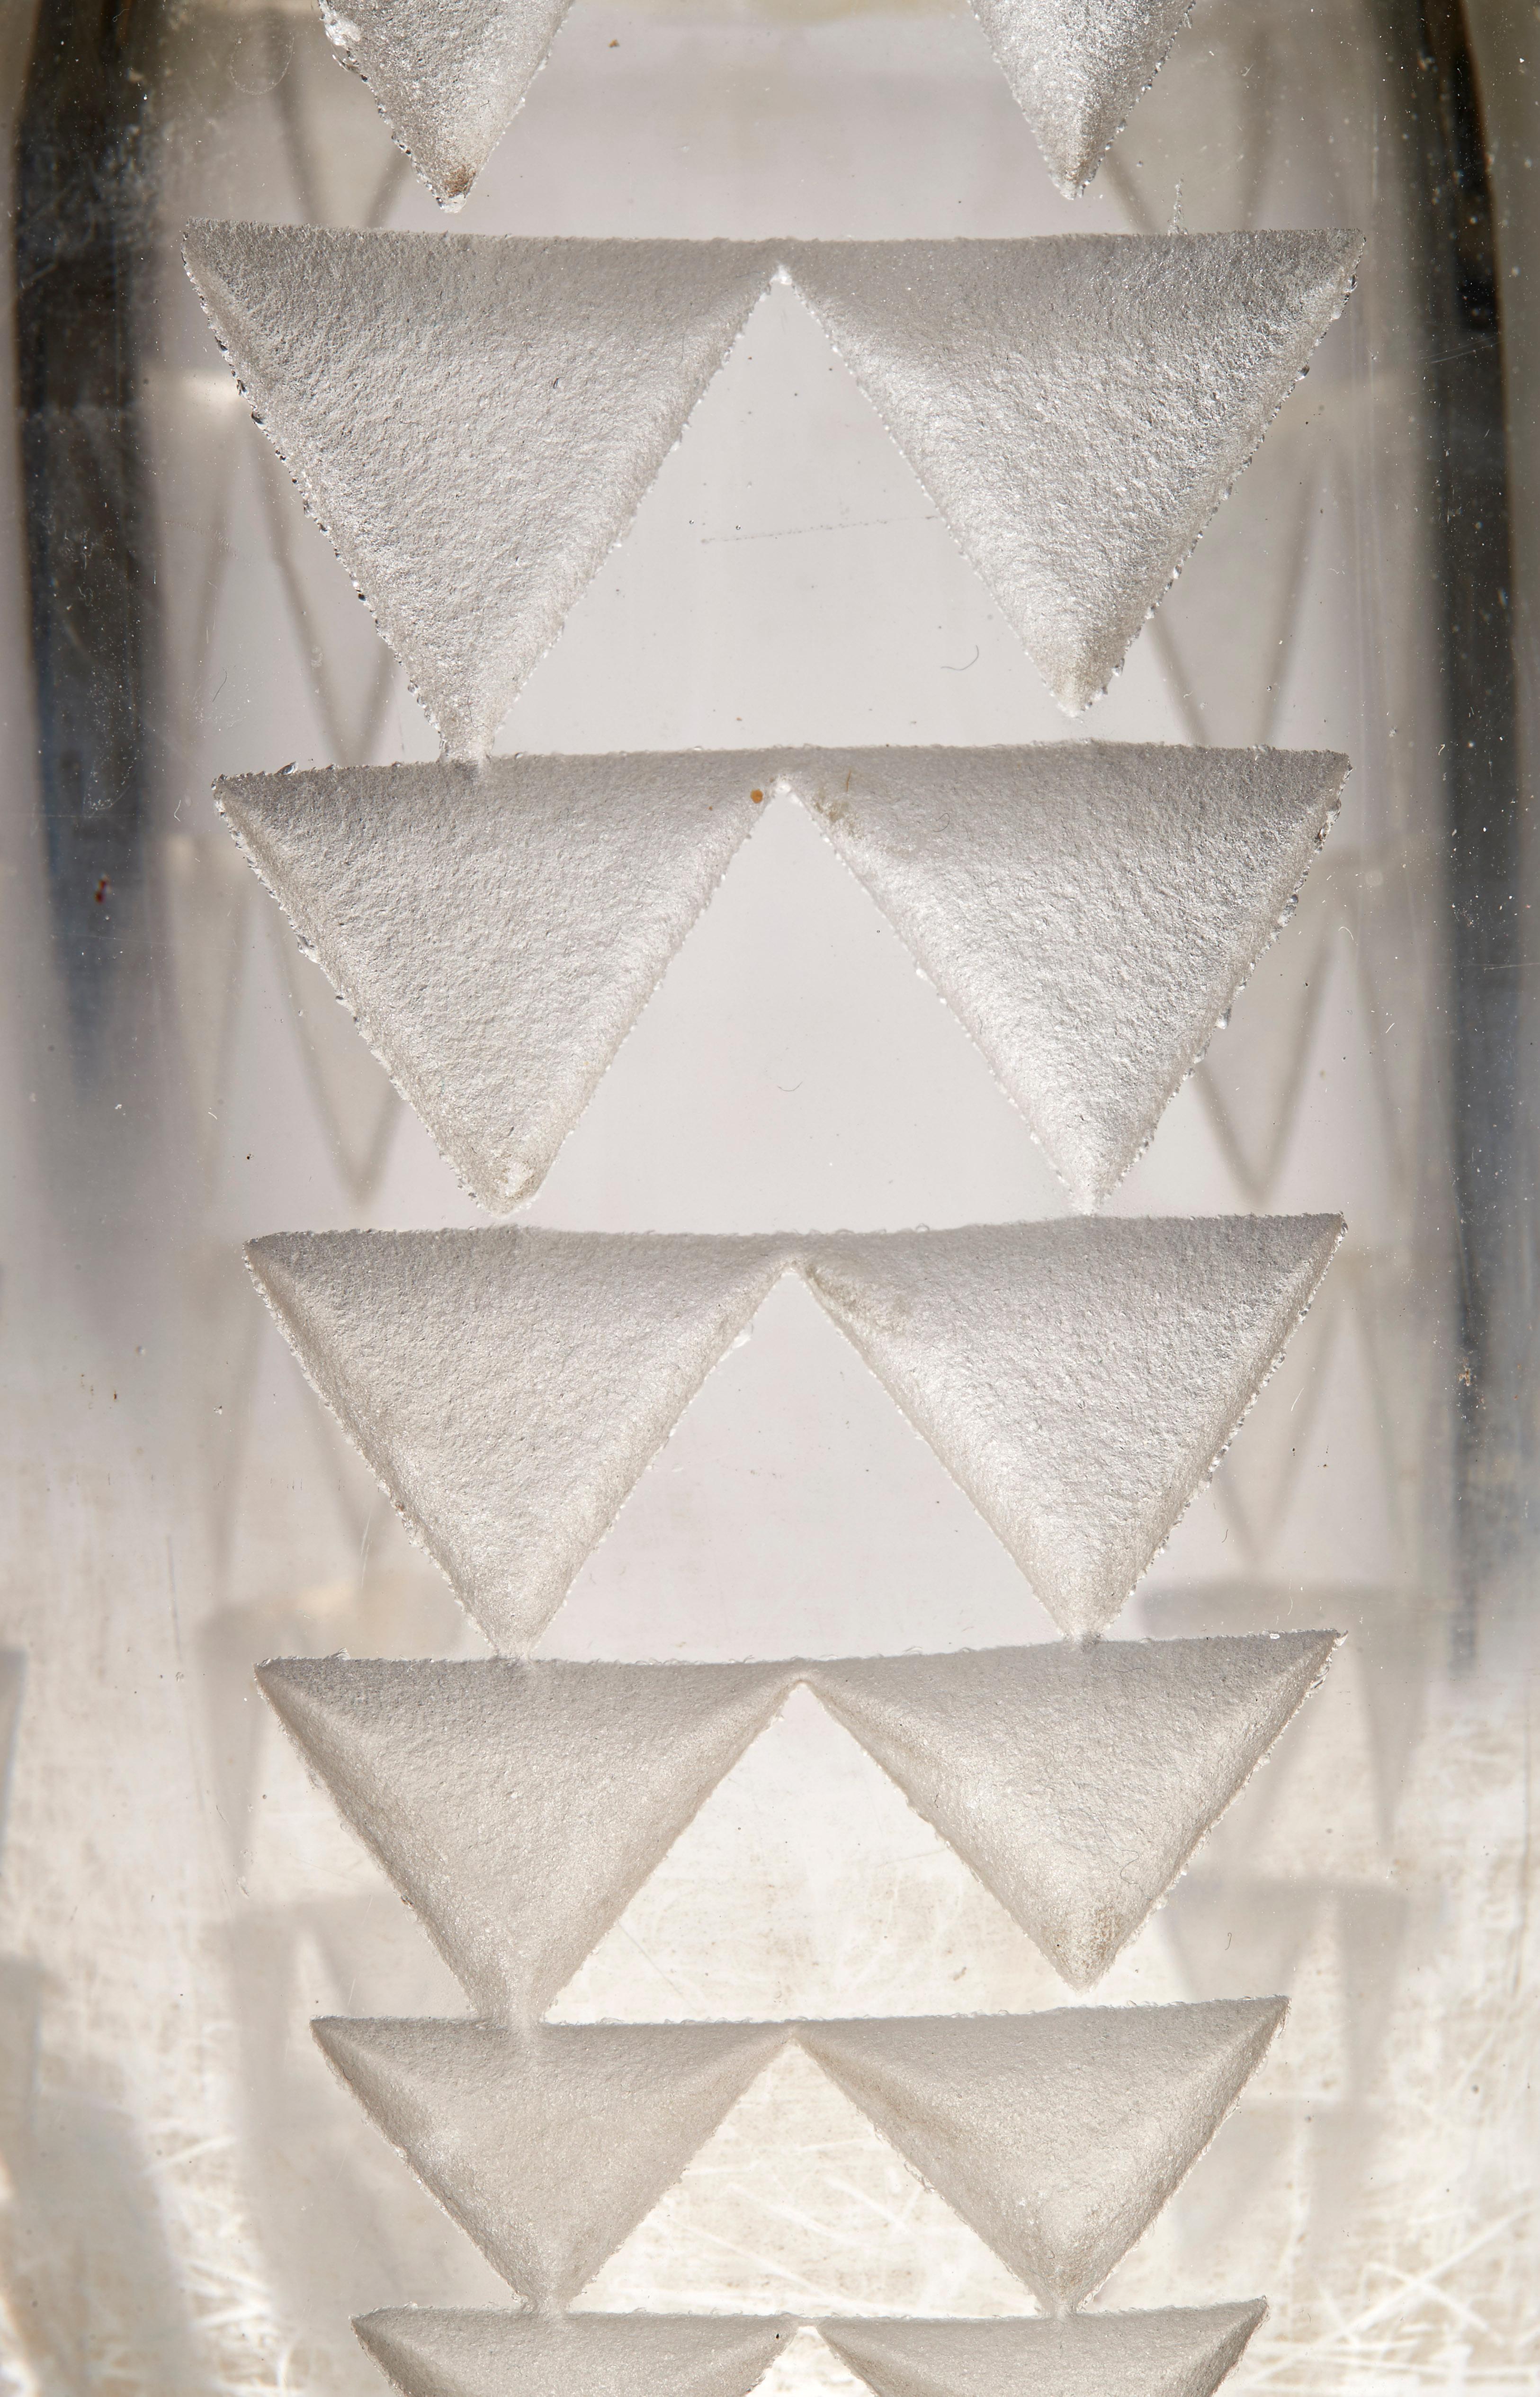 Petit vase cylindrique en verre épais translucide, décor géométrique de frises verticales à motifs triangulaires décroissants gravés à l'acide. Signature du monogramme de l'artiste sous la base.

Bibliographie :
René Chavance, Les verreries de